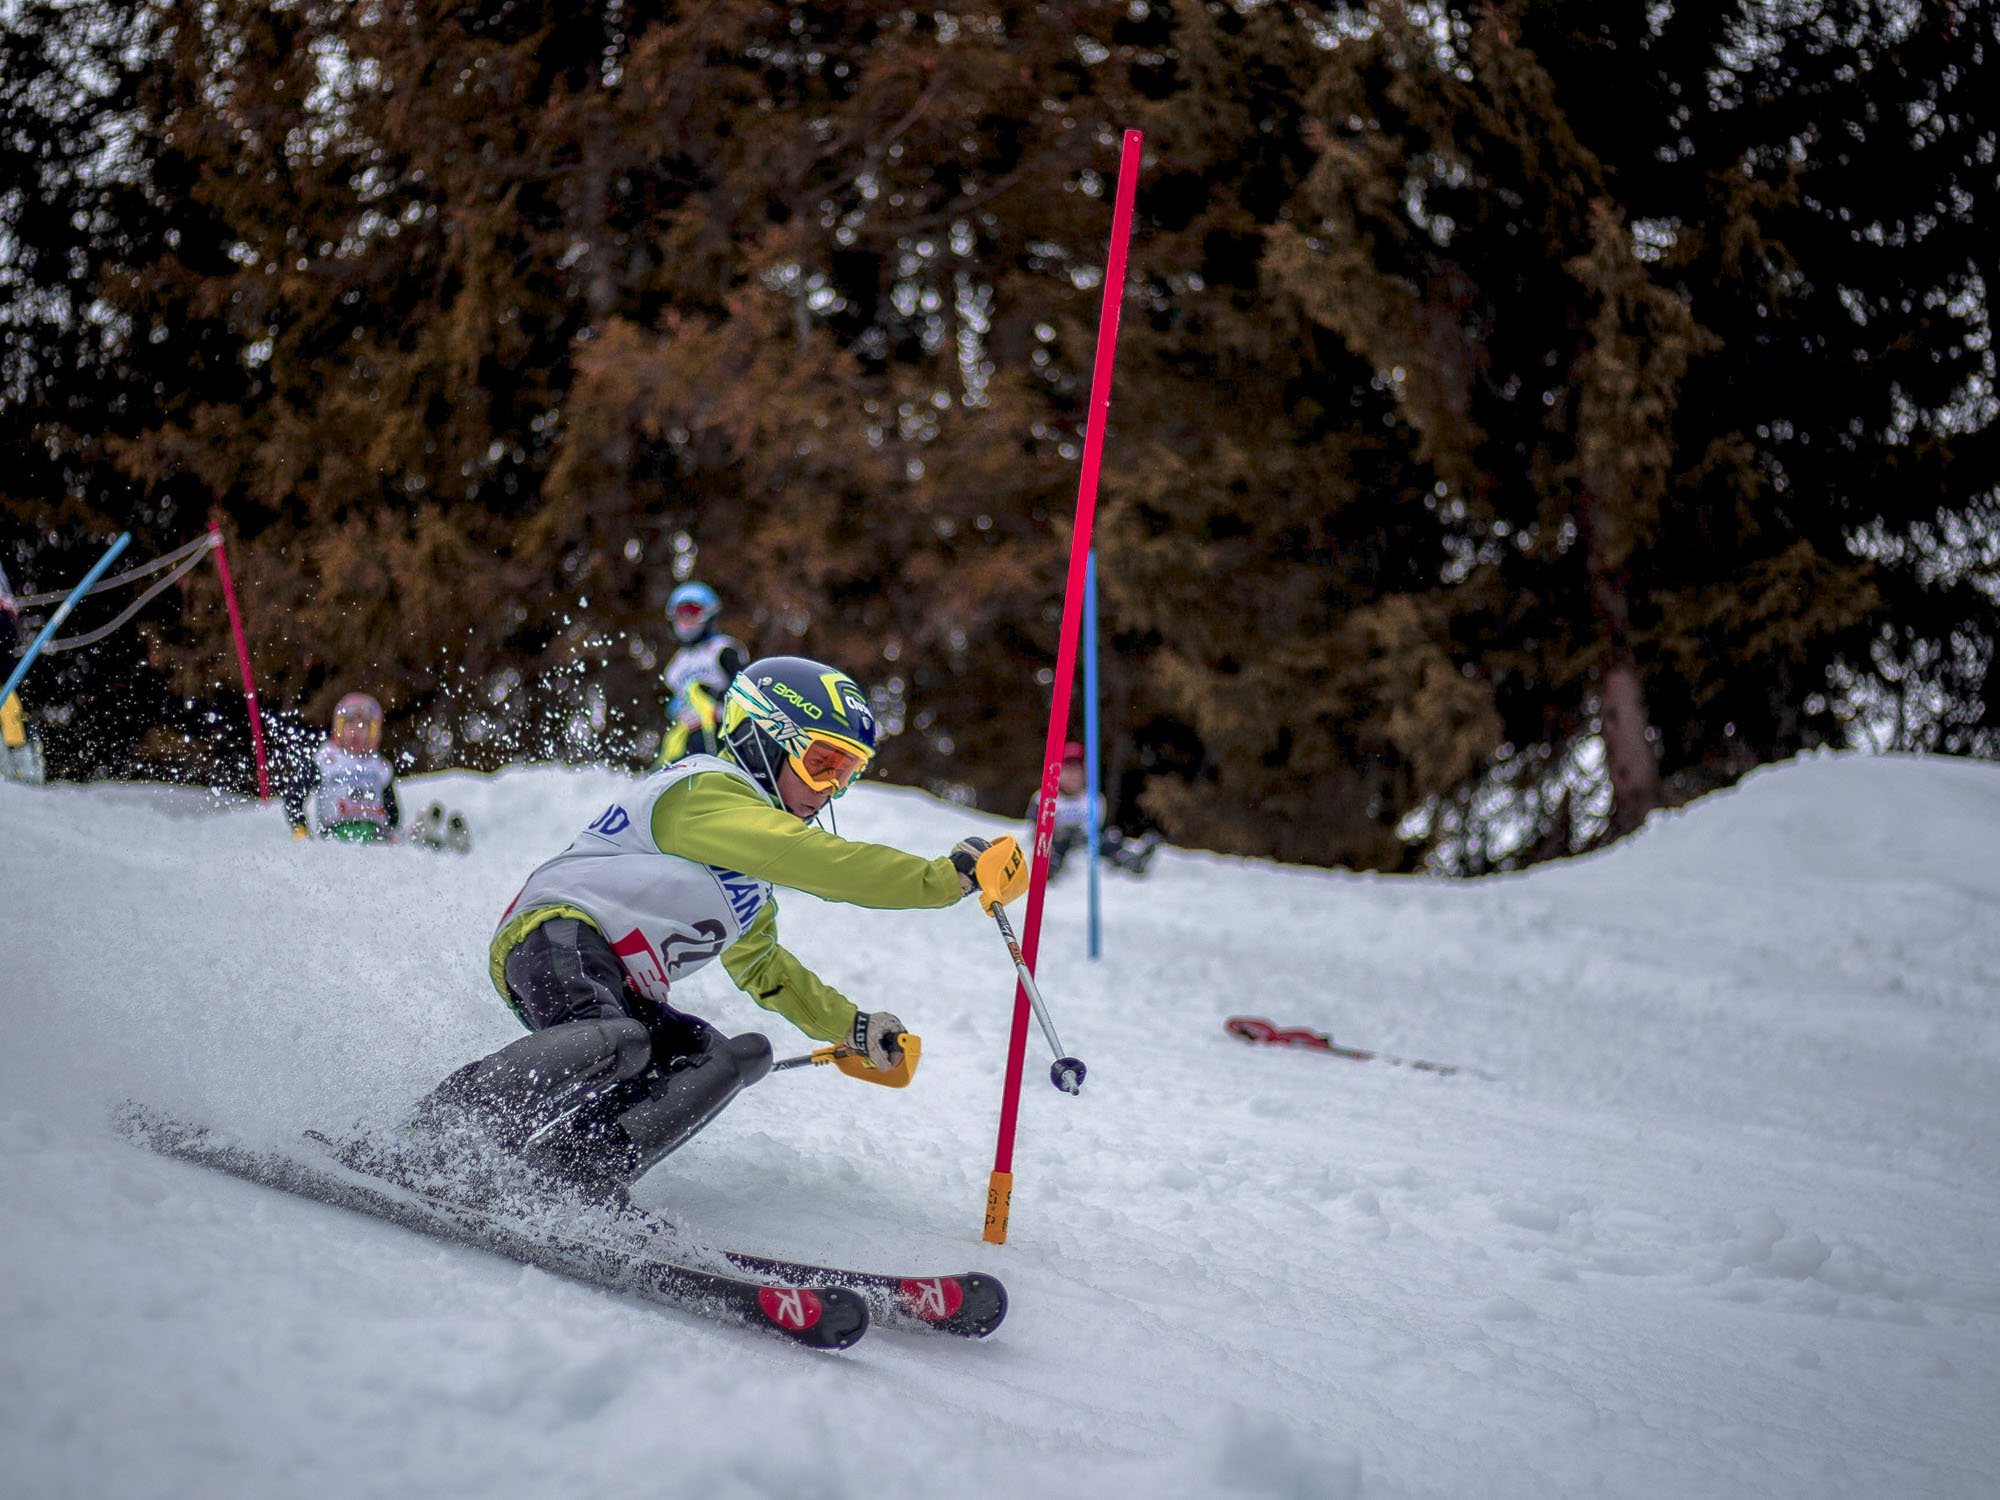 Esquí alpino modalidad combinada, descenso y slalom